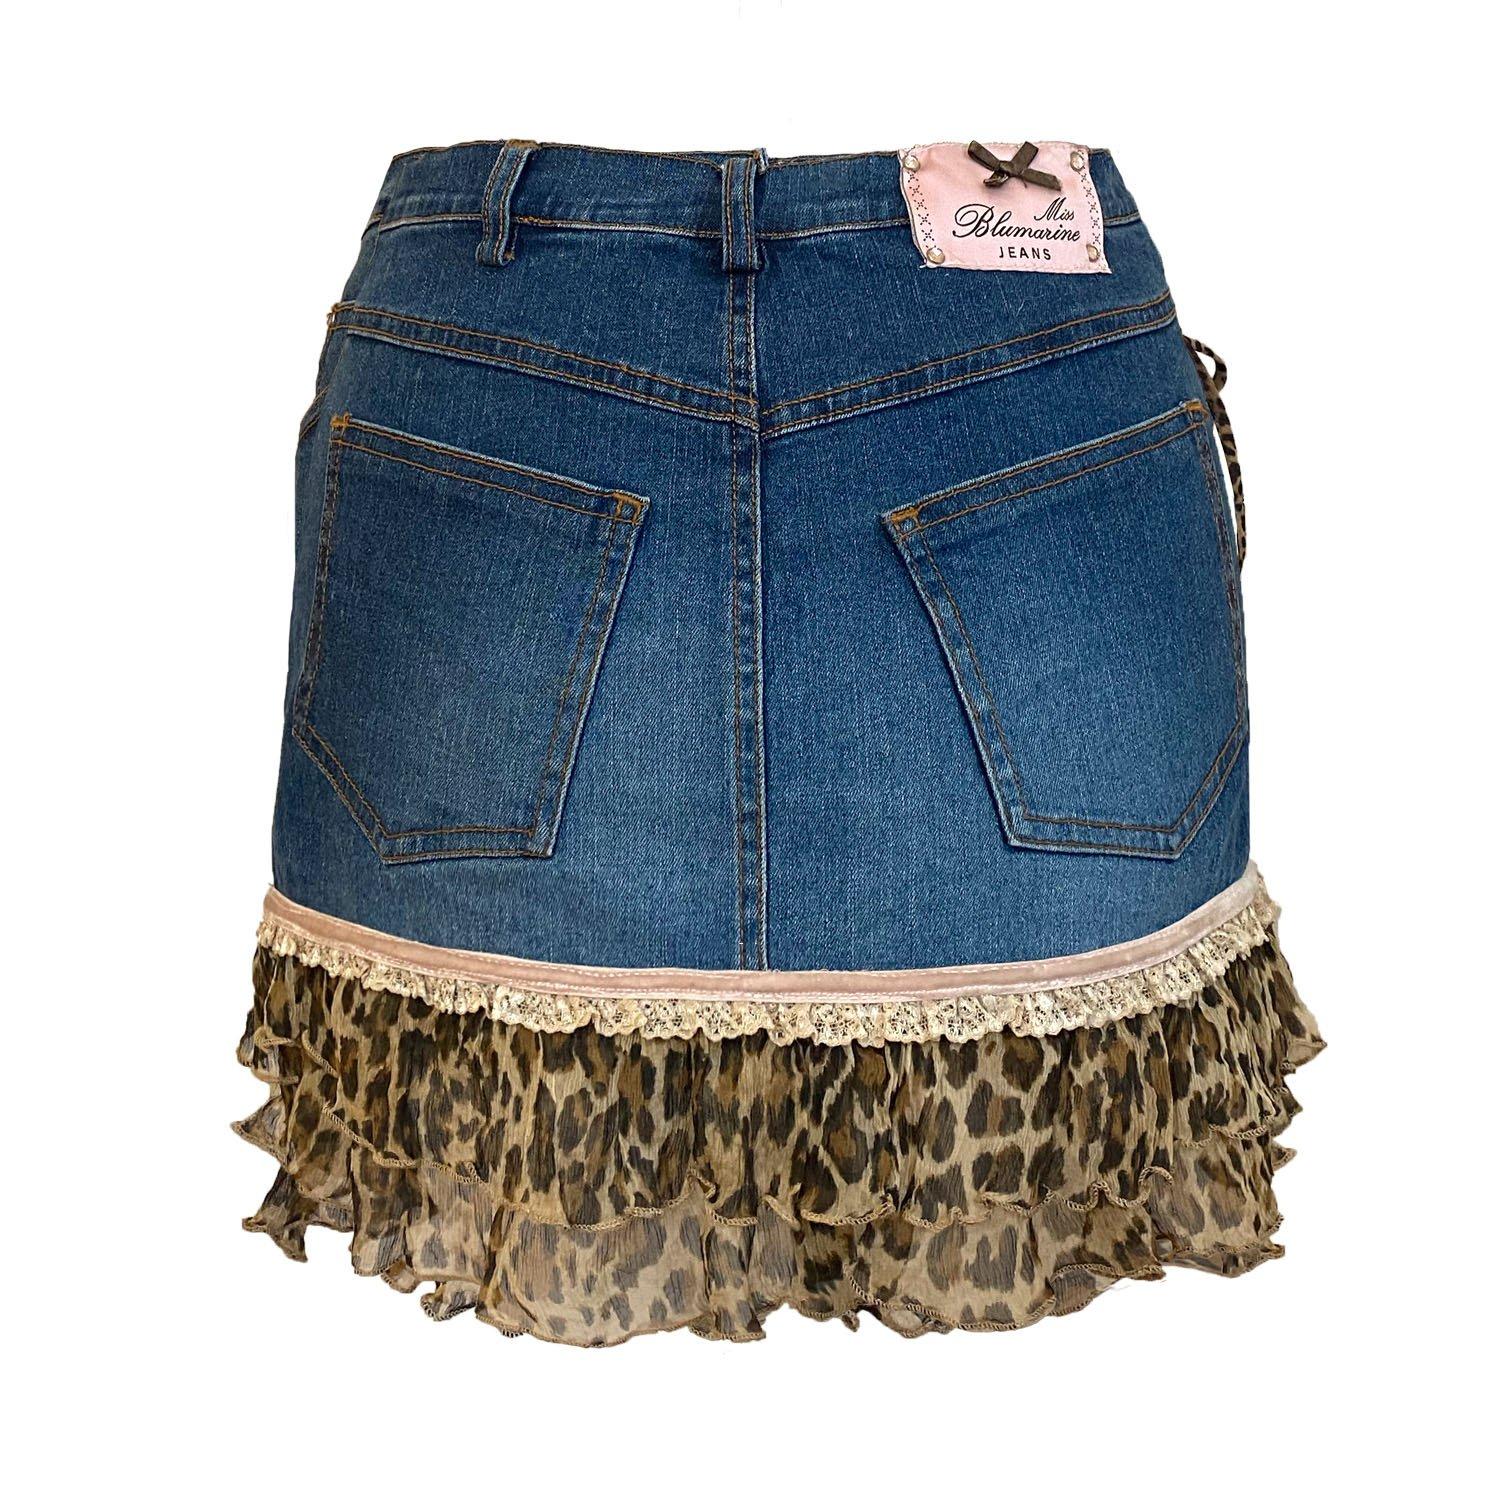 Mini jupe vintage en denim bleu de Blumarine Jeans. Style bas iconique des années iCon, rare et difficile à trouver. Froufrous en soie à motif léopard avec bande de dentelle et de velours. Elle porte le Label Blumarine Jeans en rose au dos et est